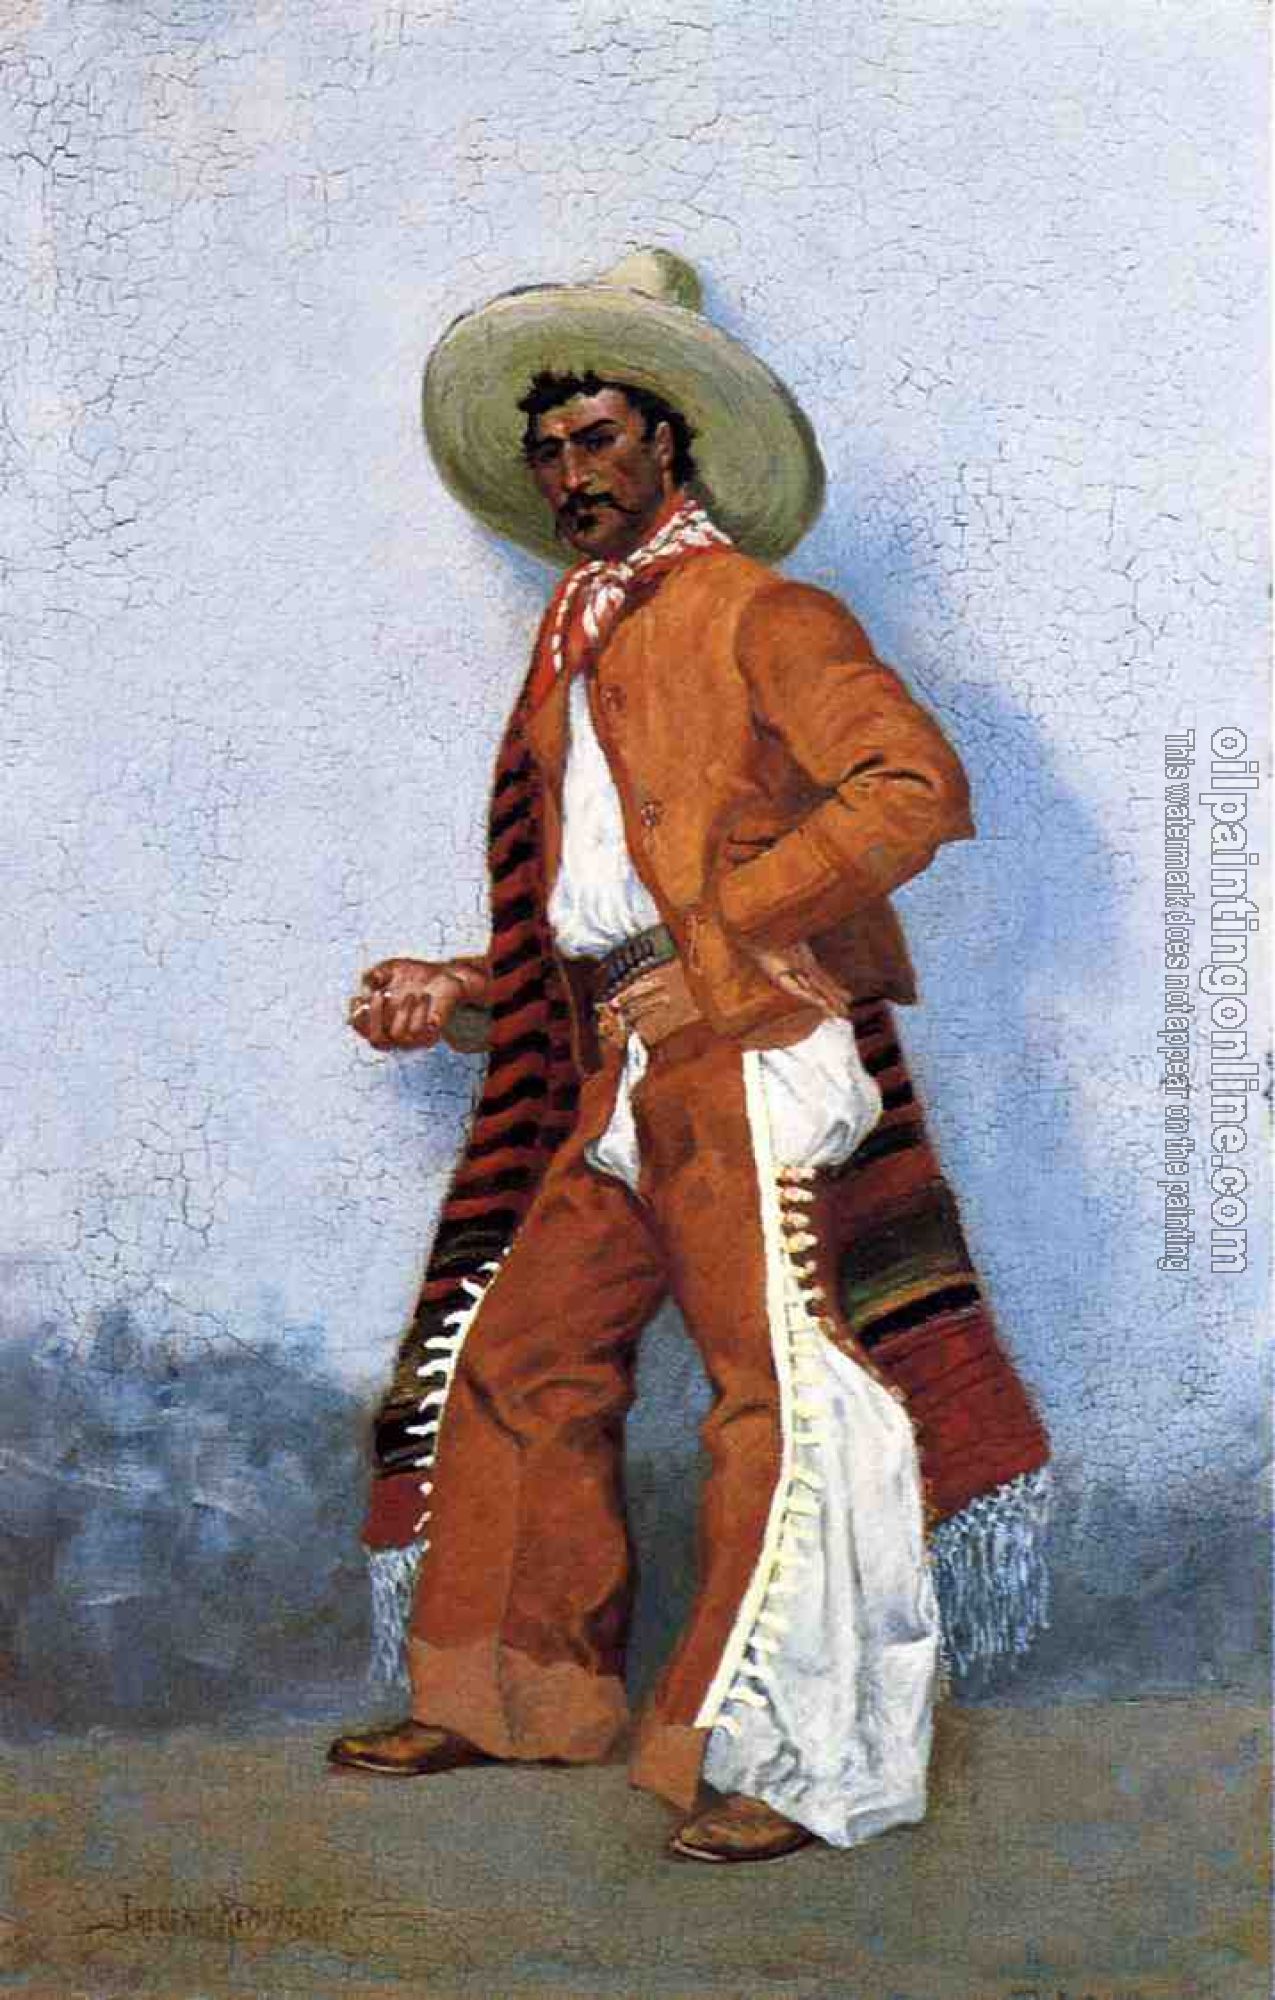 Frederic Remington - A Vaquero